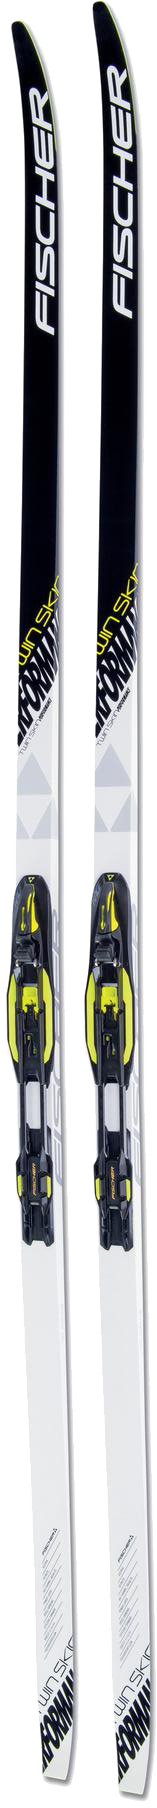 Лыжи для новичков Fischer Twin Skin Perfomance IFP 197 см